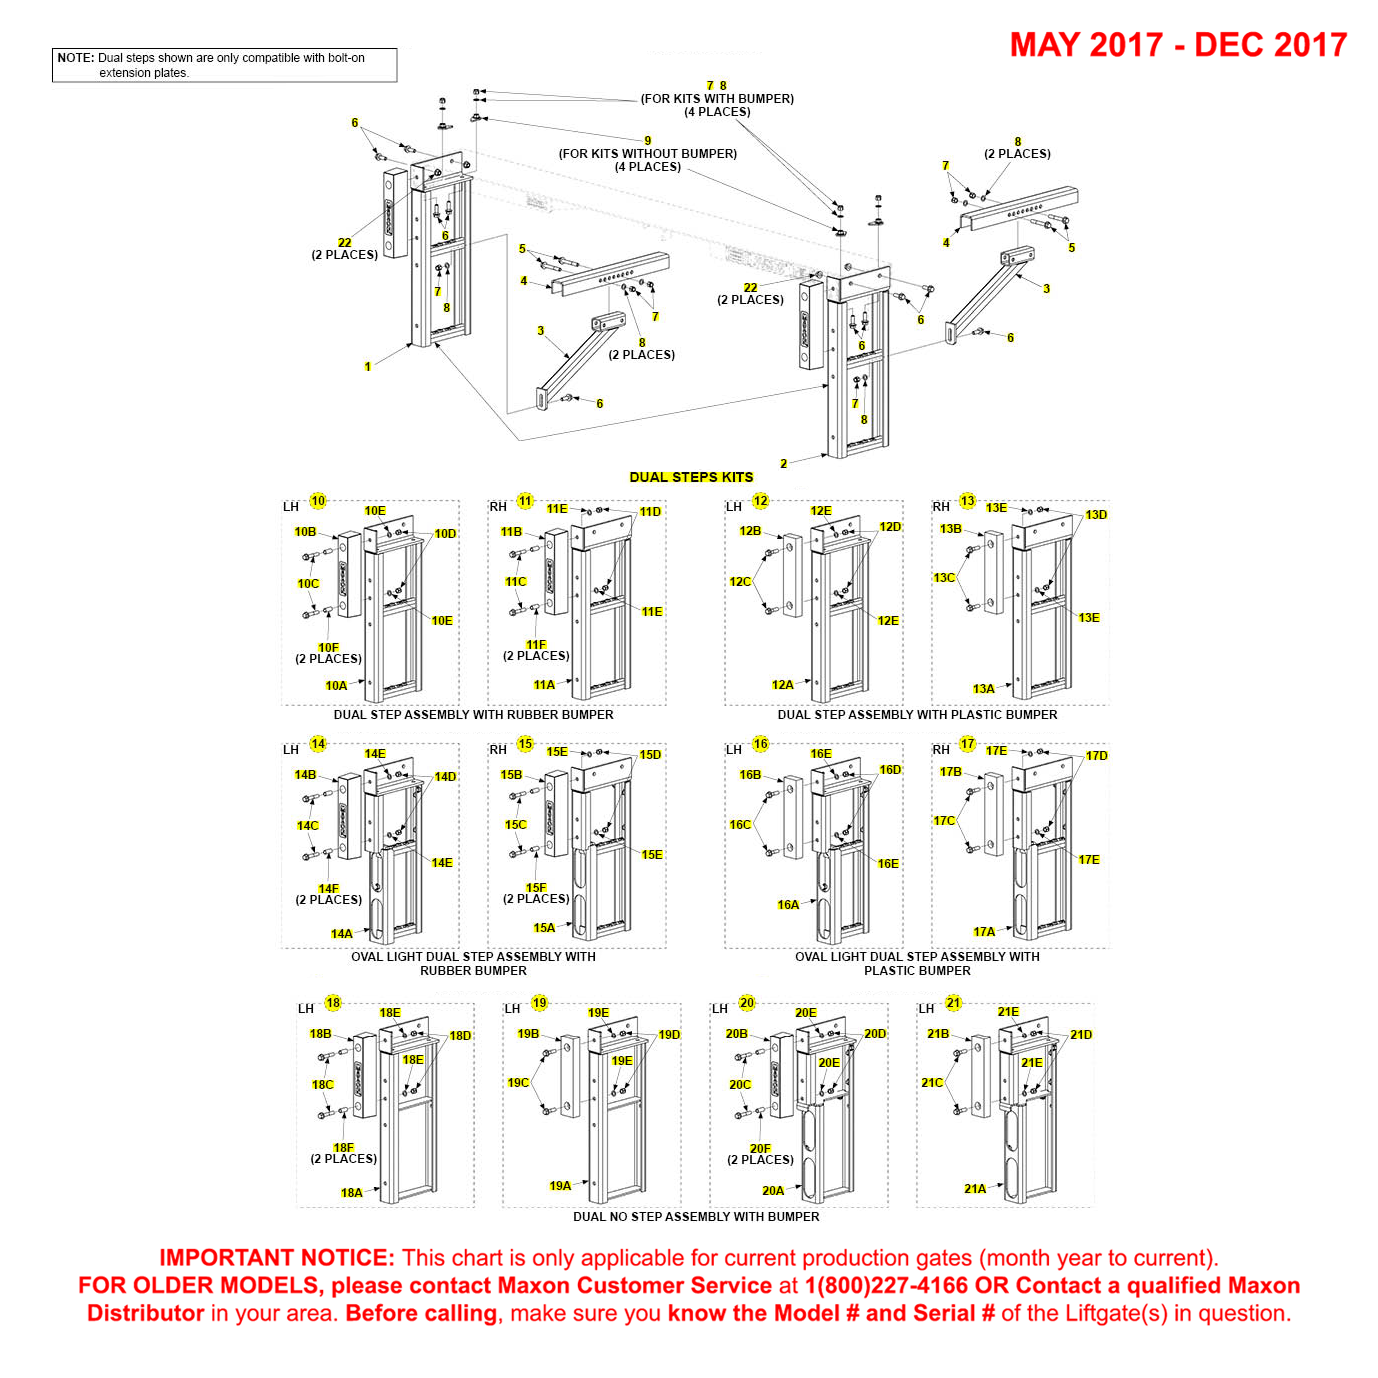 Maxon TE-15 And TE-20 (May 2017 - Dec 2017) Dual Step Kit Diagram